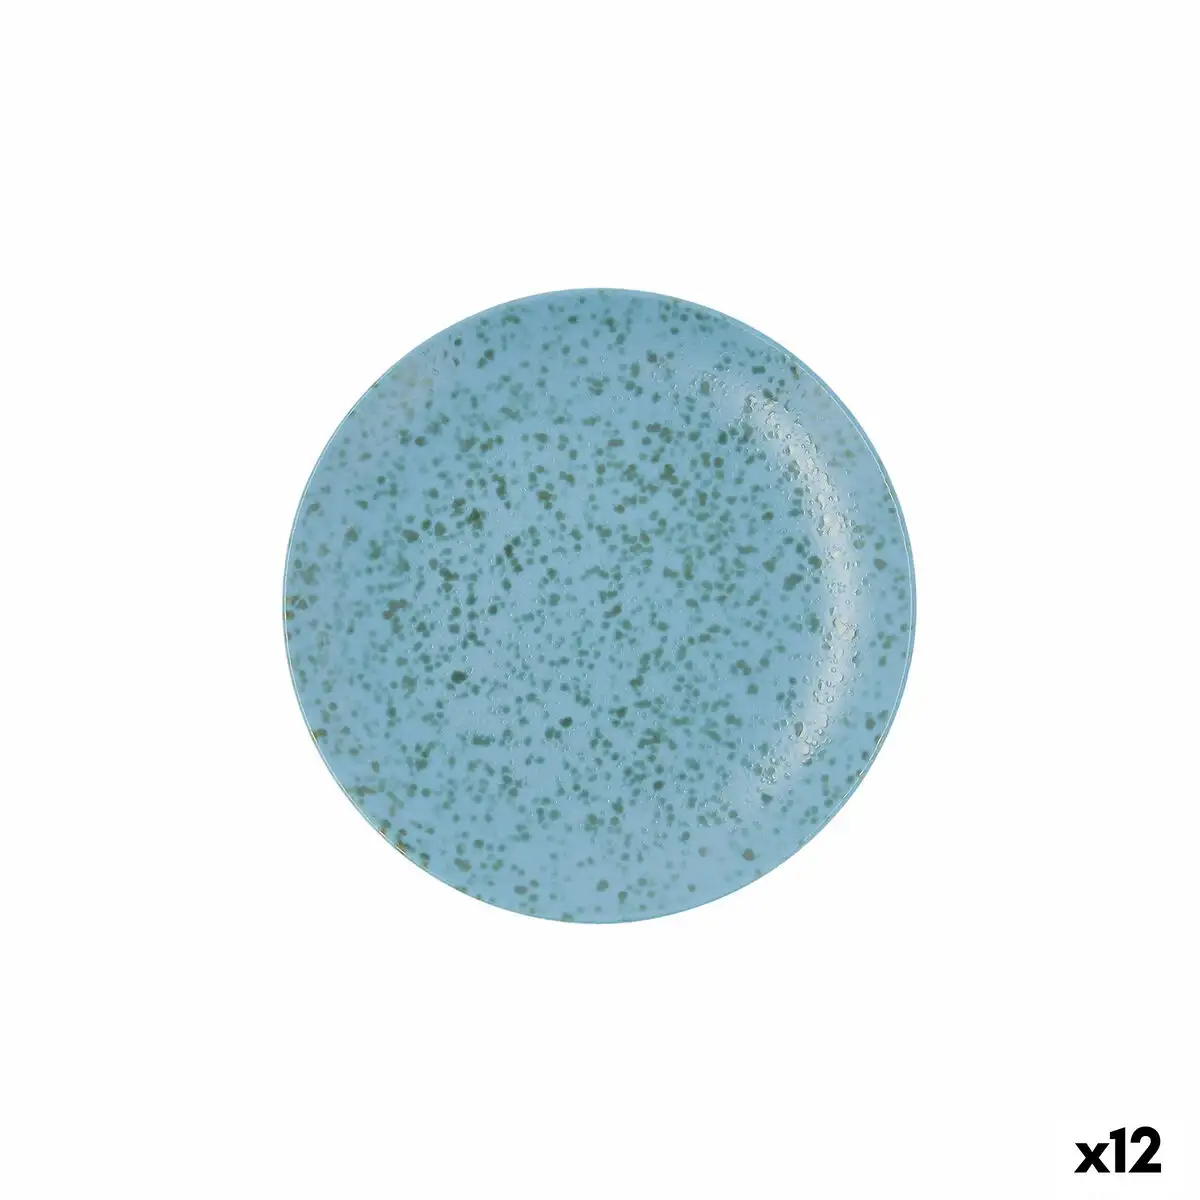 Assiette plate ariane oxide ceramique bleu o 21 cm 12 unites _2719. DIAYTAR SENEGAL - Où Choisir Devient une Expression de Soi. Découvrez notre boutique en ligne et trouvez des articles qui révèlent votre personnalité et votre style.